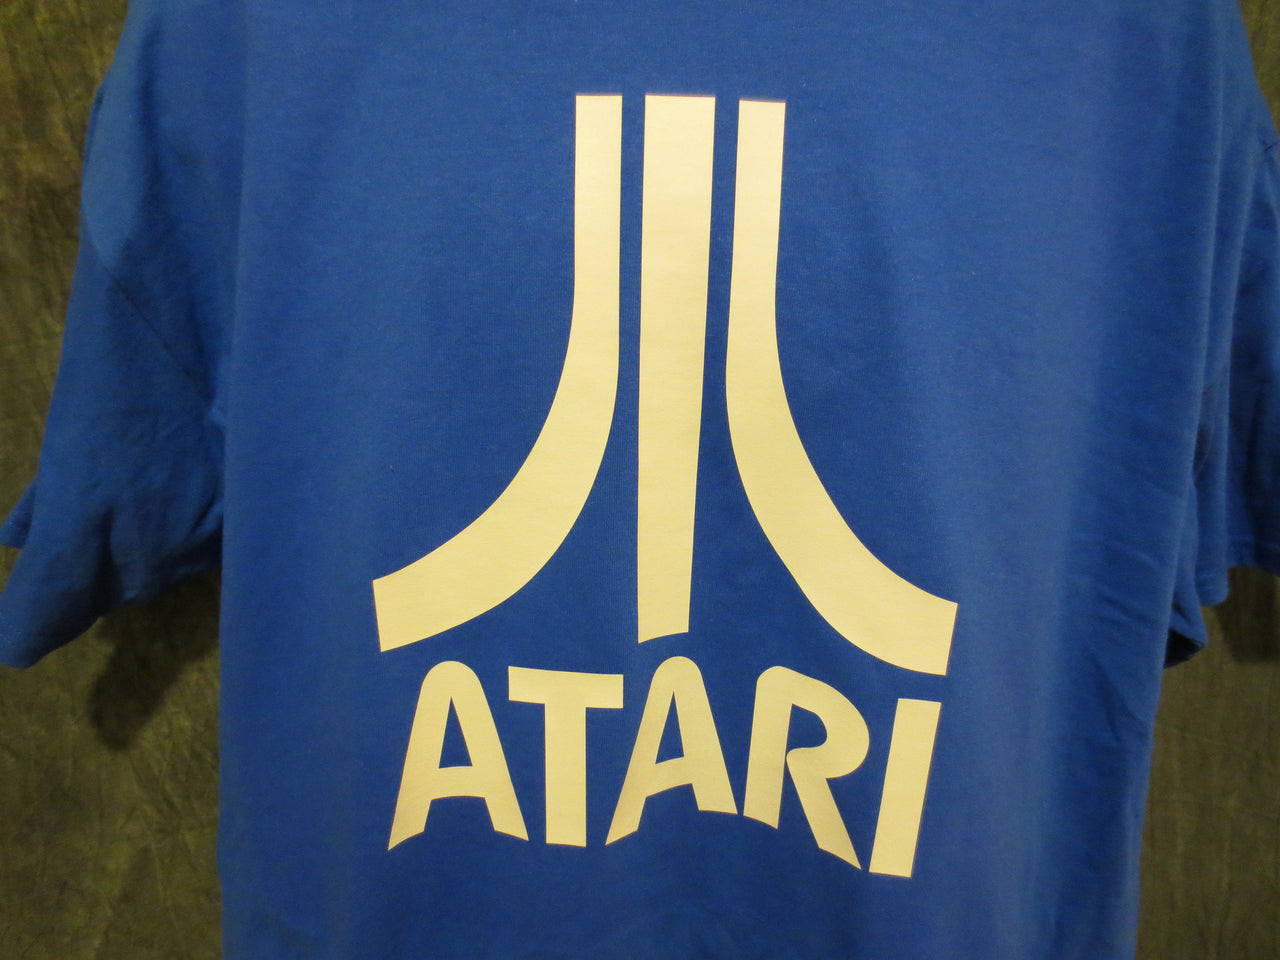 Atari Logo Tshirt: Blue With White Print - TshirtNow.net - 2